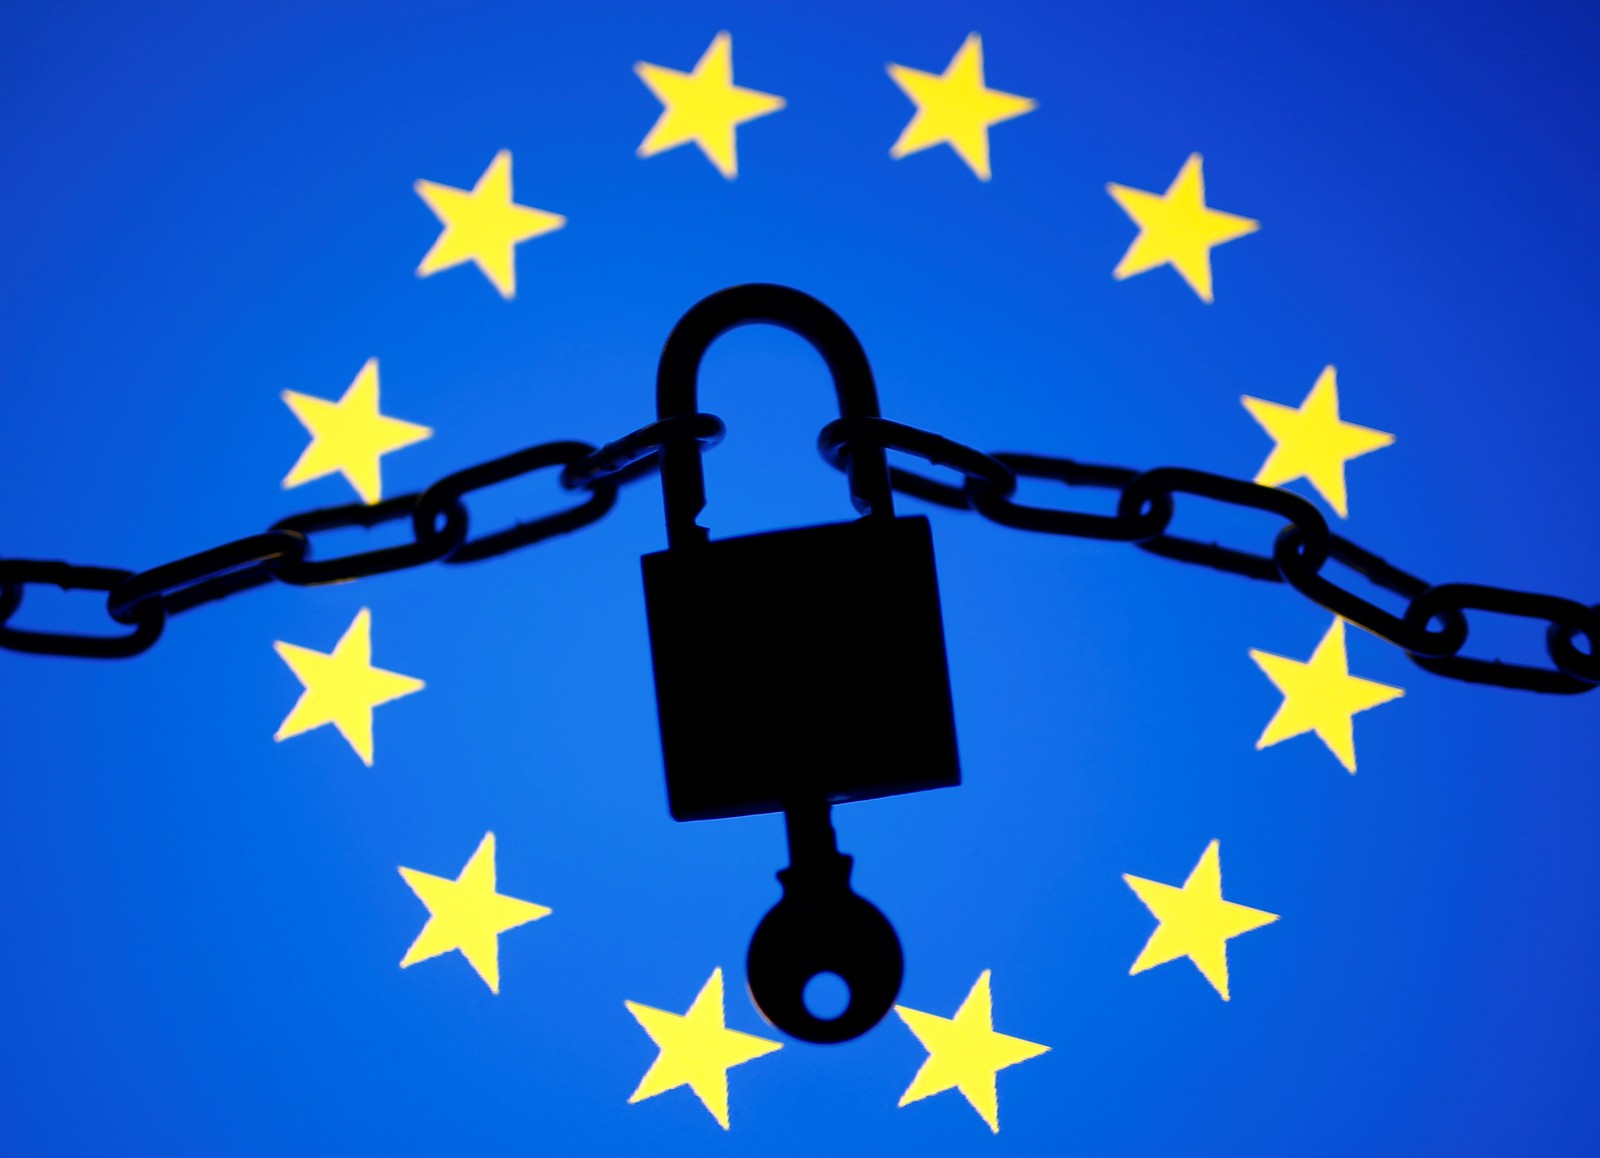 Lei europeia que protege dados na web entra em vigor e vale no mundo todo